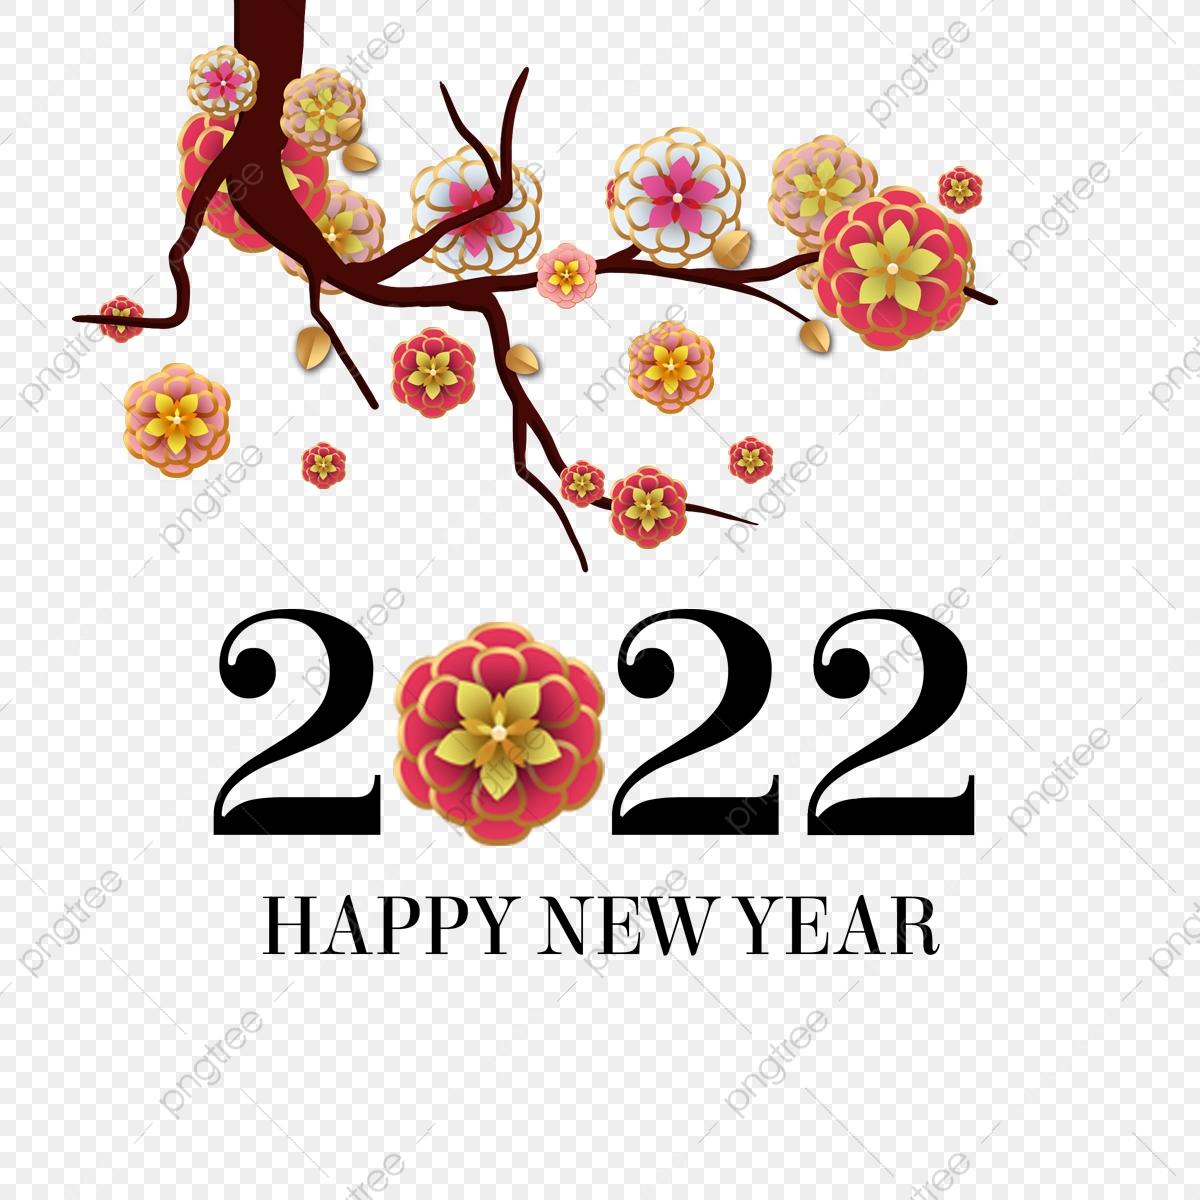 Chúc mừng năm mới 2022 !